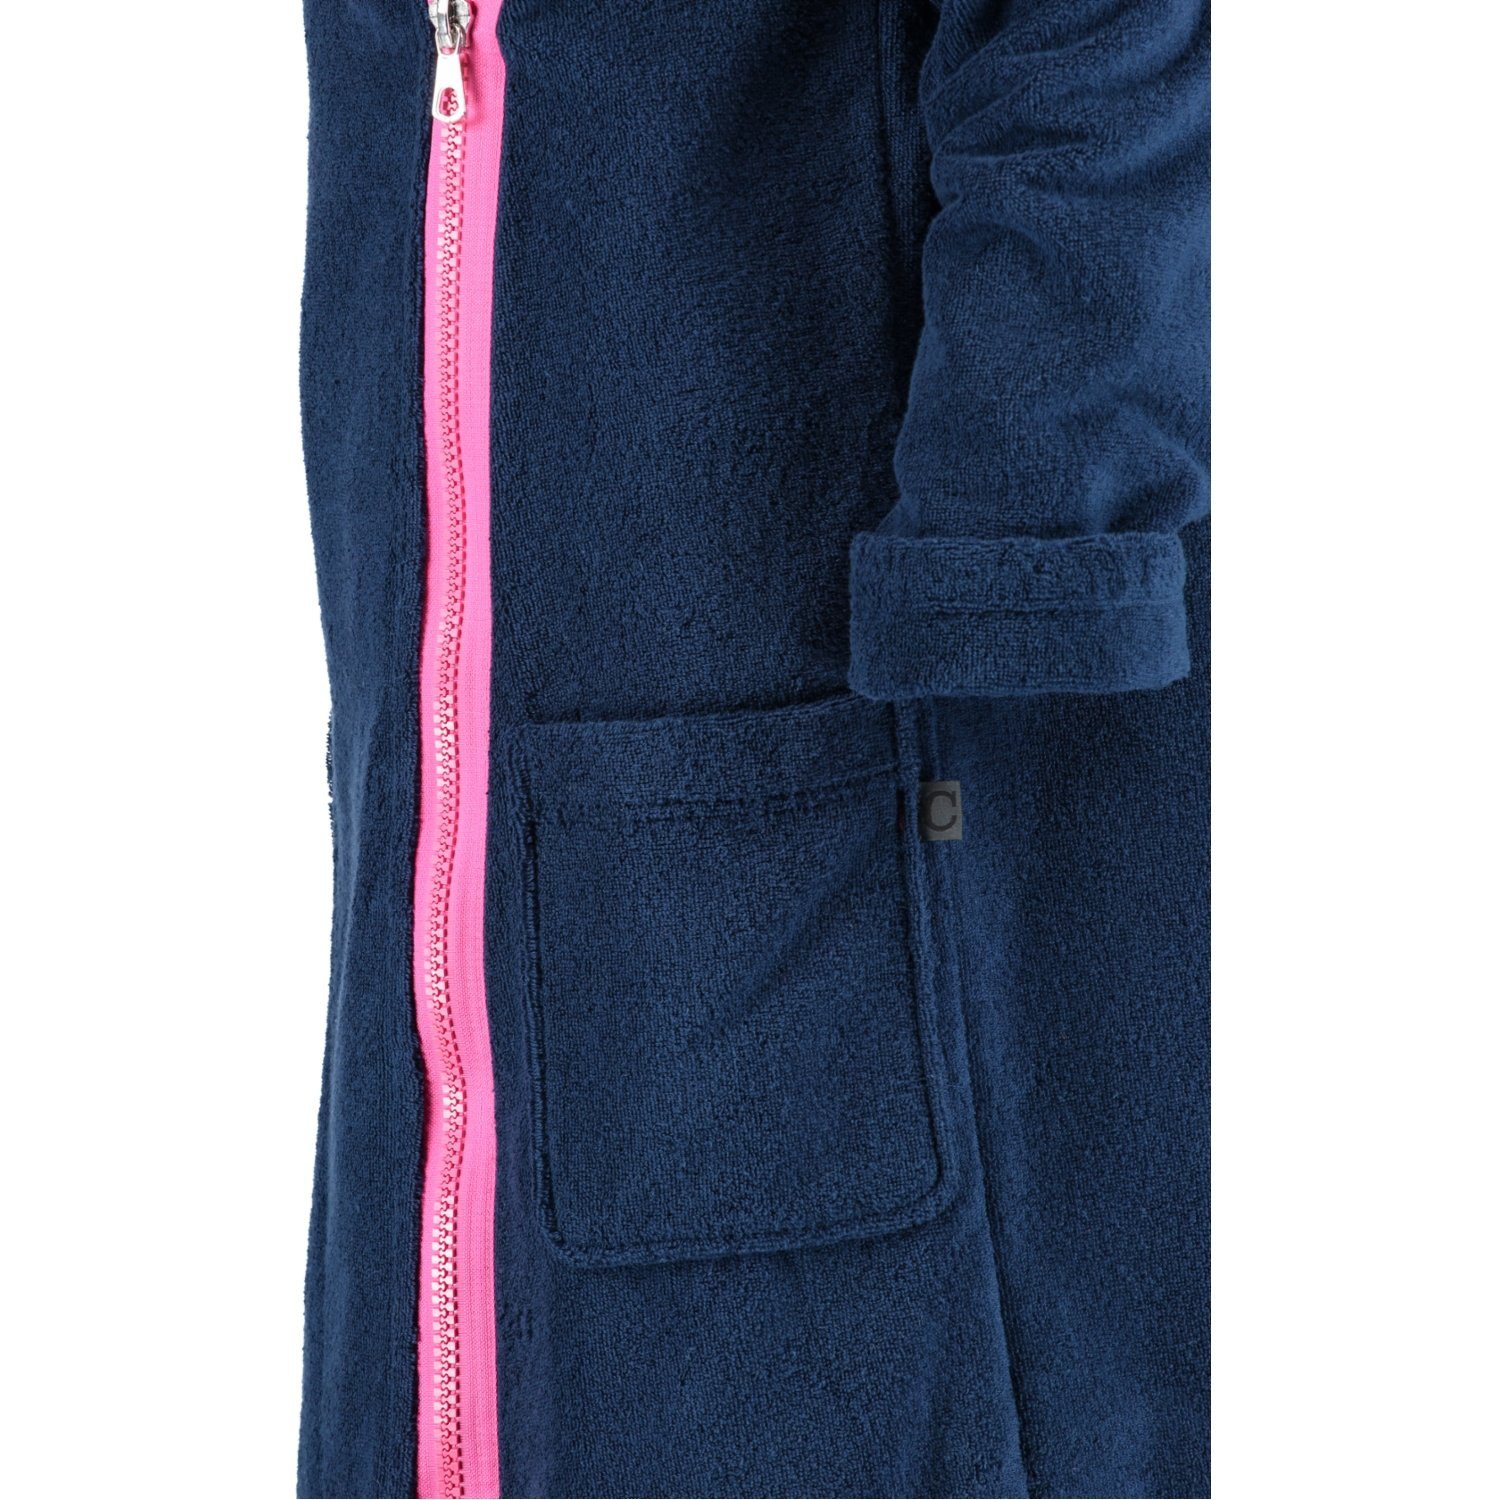 133 Zipper Reißverschluss, Cawö 6116, pink Kurzform, Baumwolle, Kapuze, navy Damenbademantel